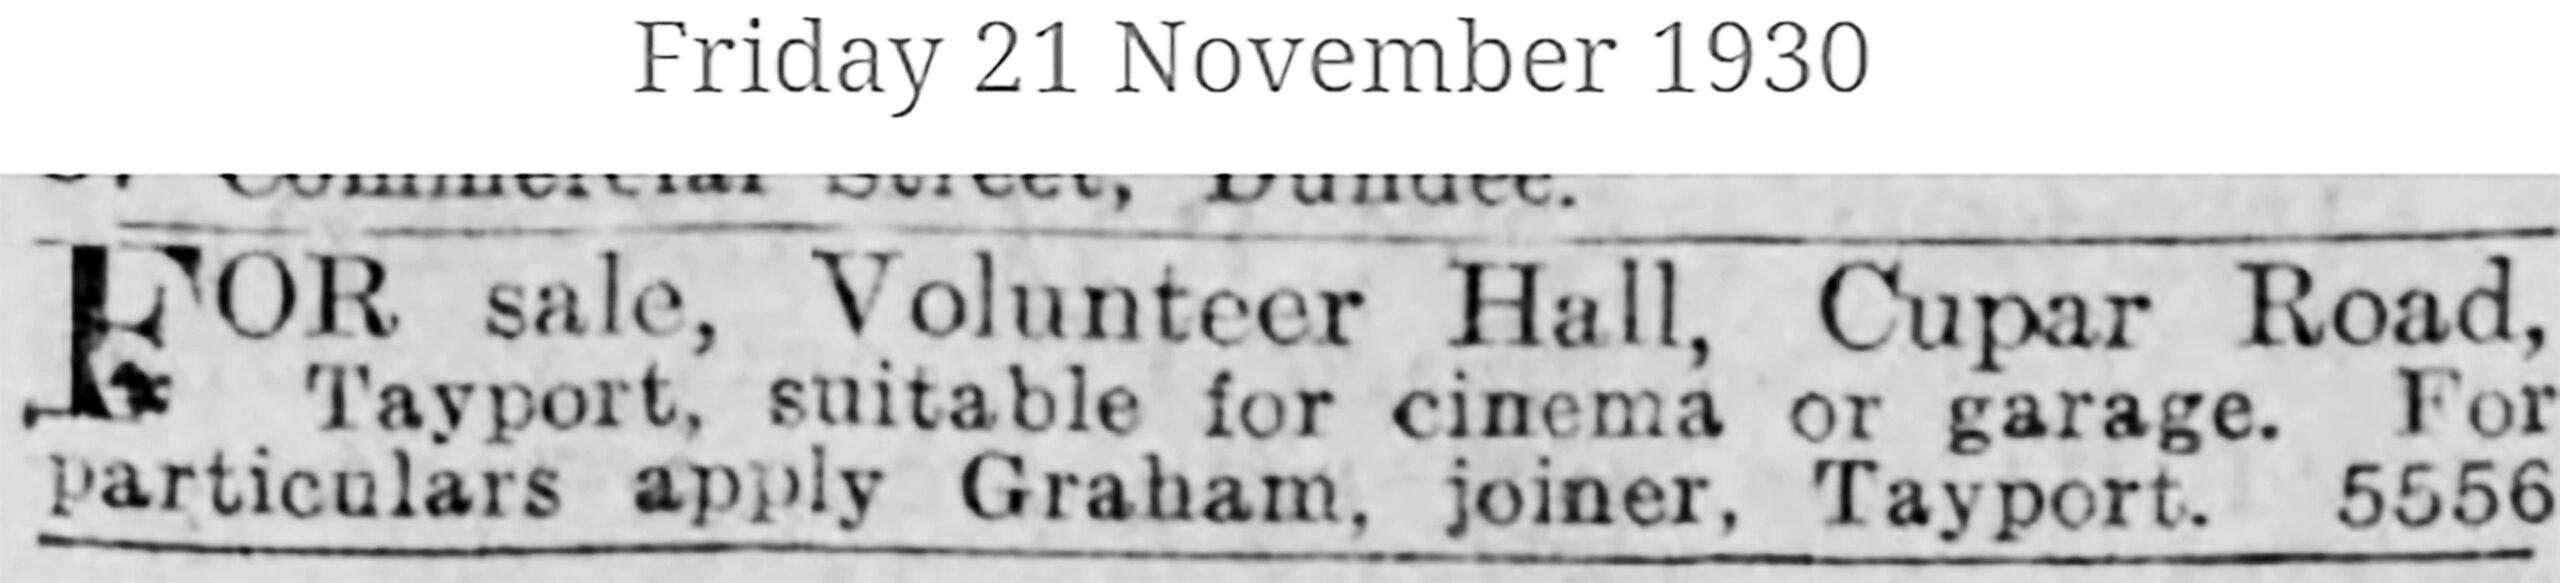 Tayport Heritage Trail - Board 11 - 1930 sale of Volunteer Hall